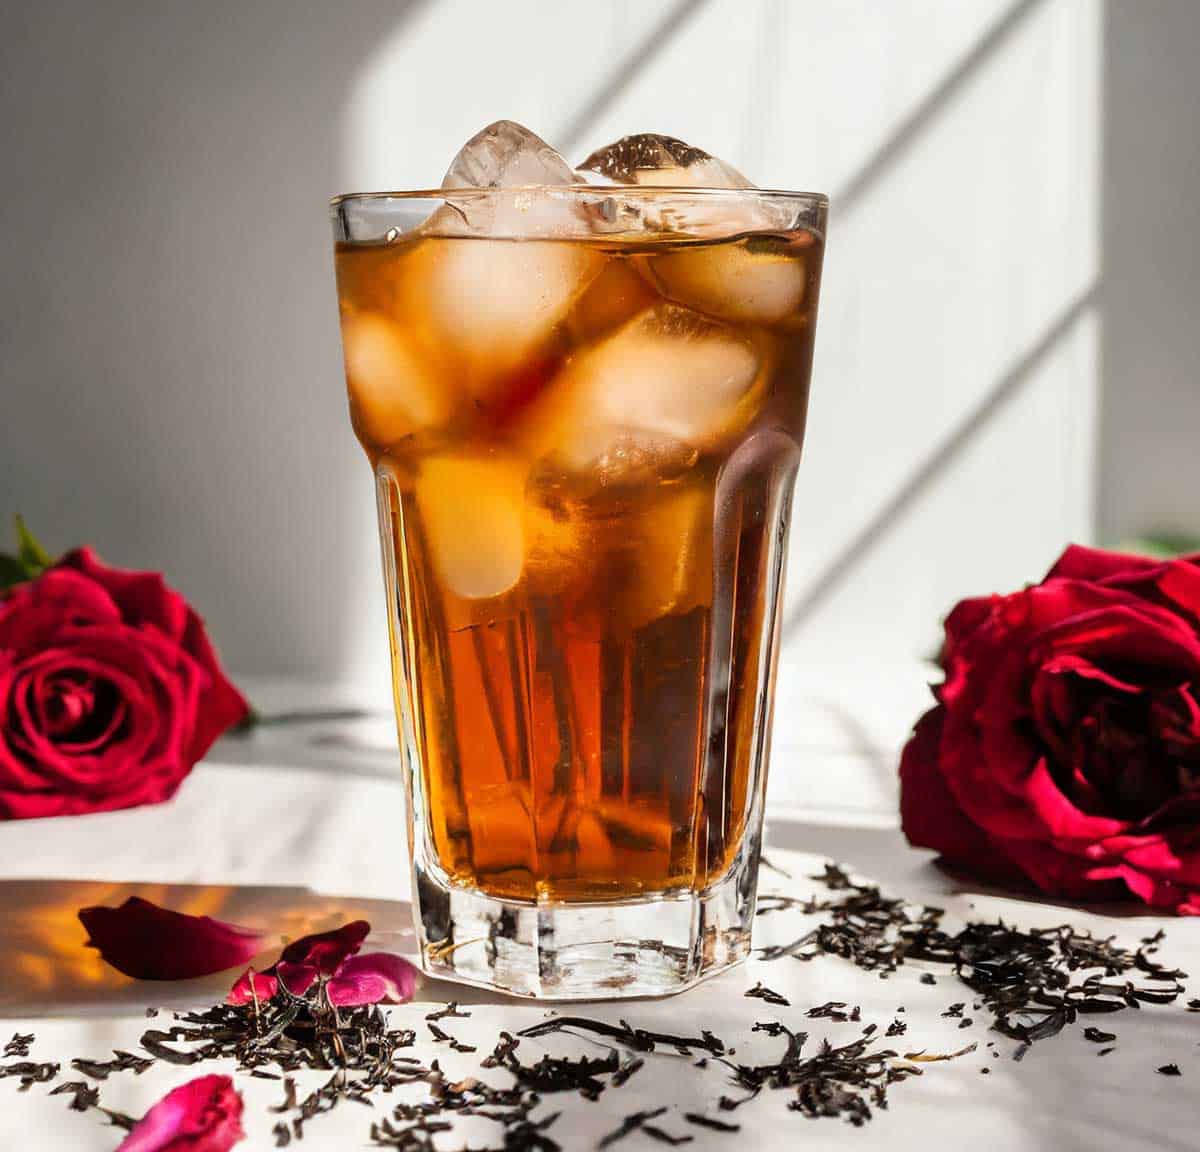 La Vie En Rose Black Tea by Tucson Tea Company